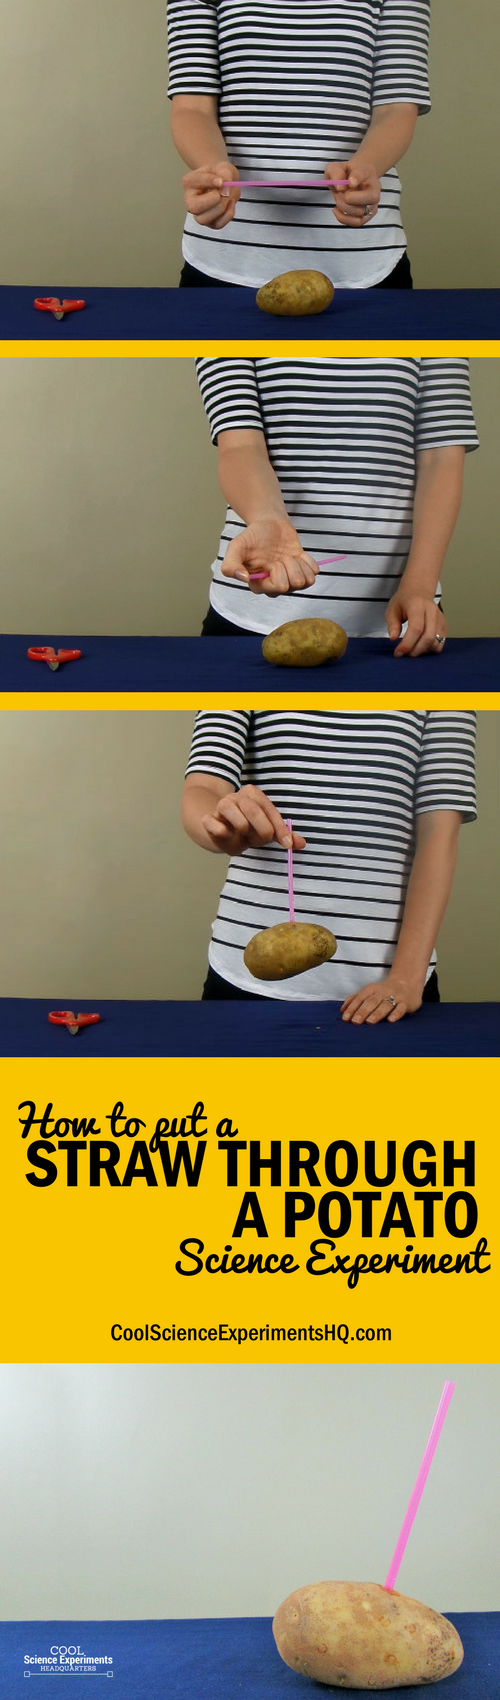 Straw through Potato Experiment Steps